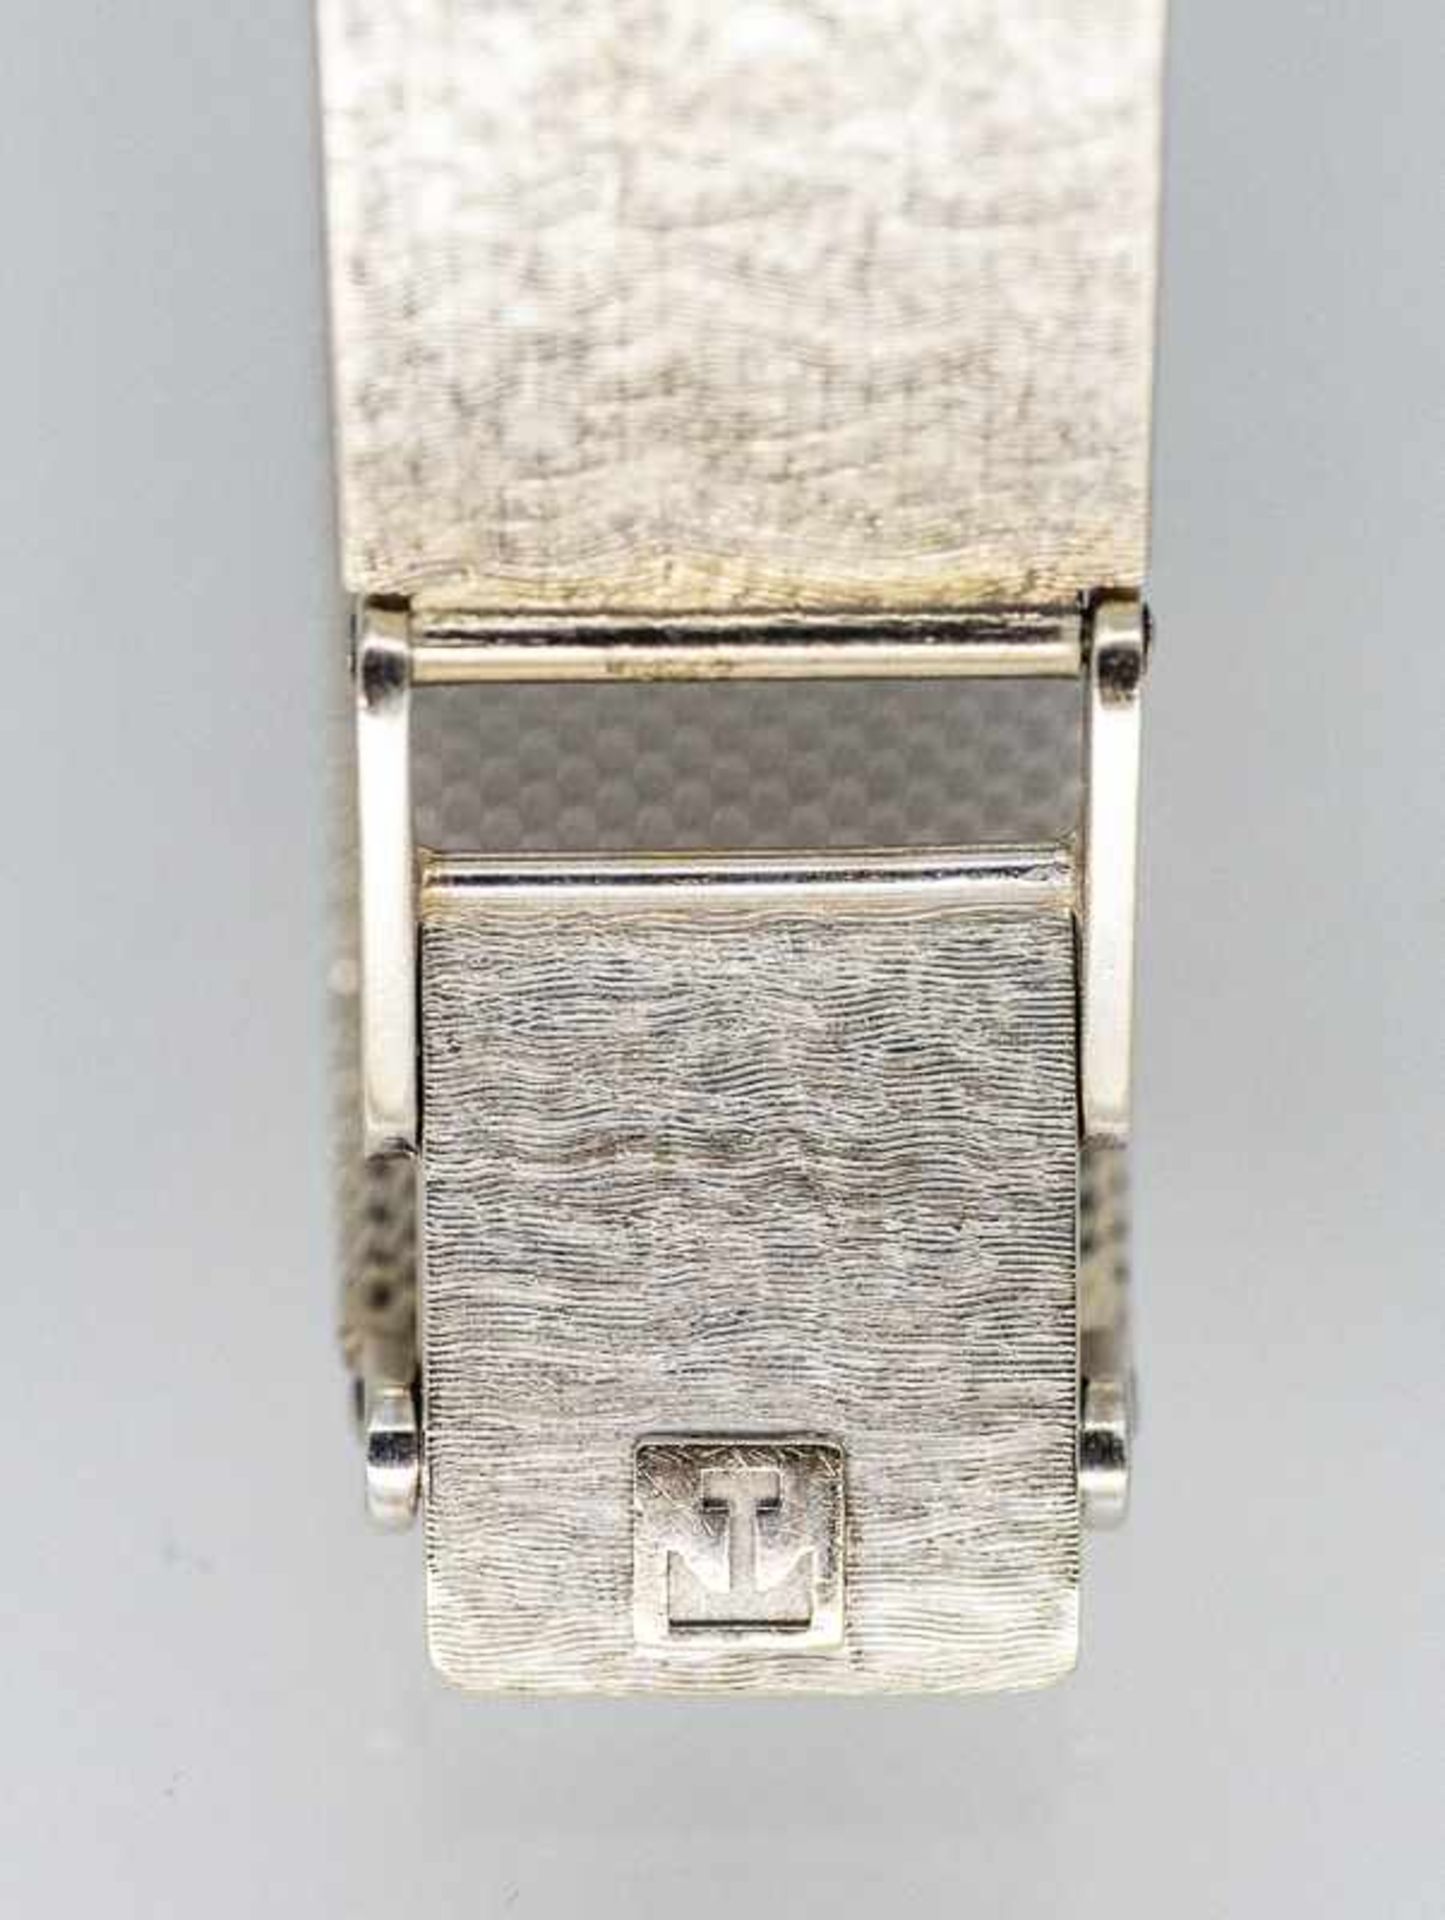 Damenarmbanduhr, bezeichnet Tissot/Stylist, 70- er Jahre. - Bild 2 aus 2